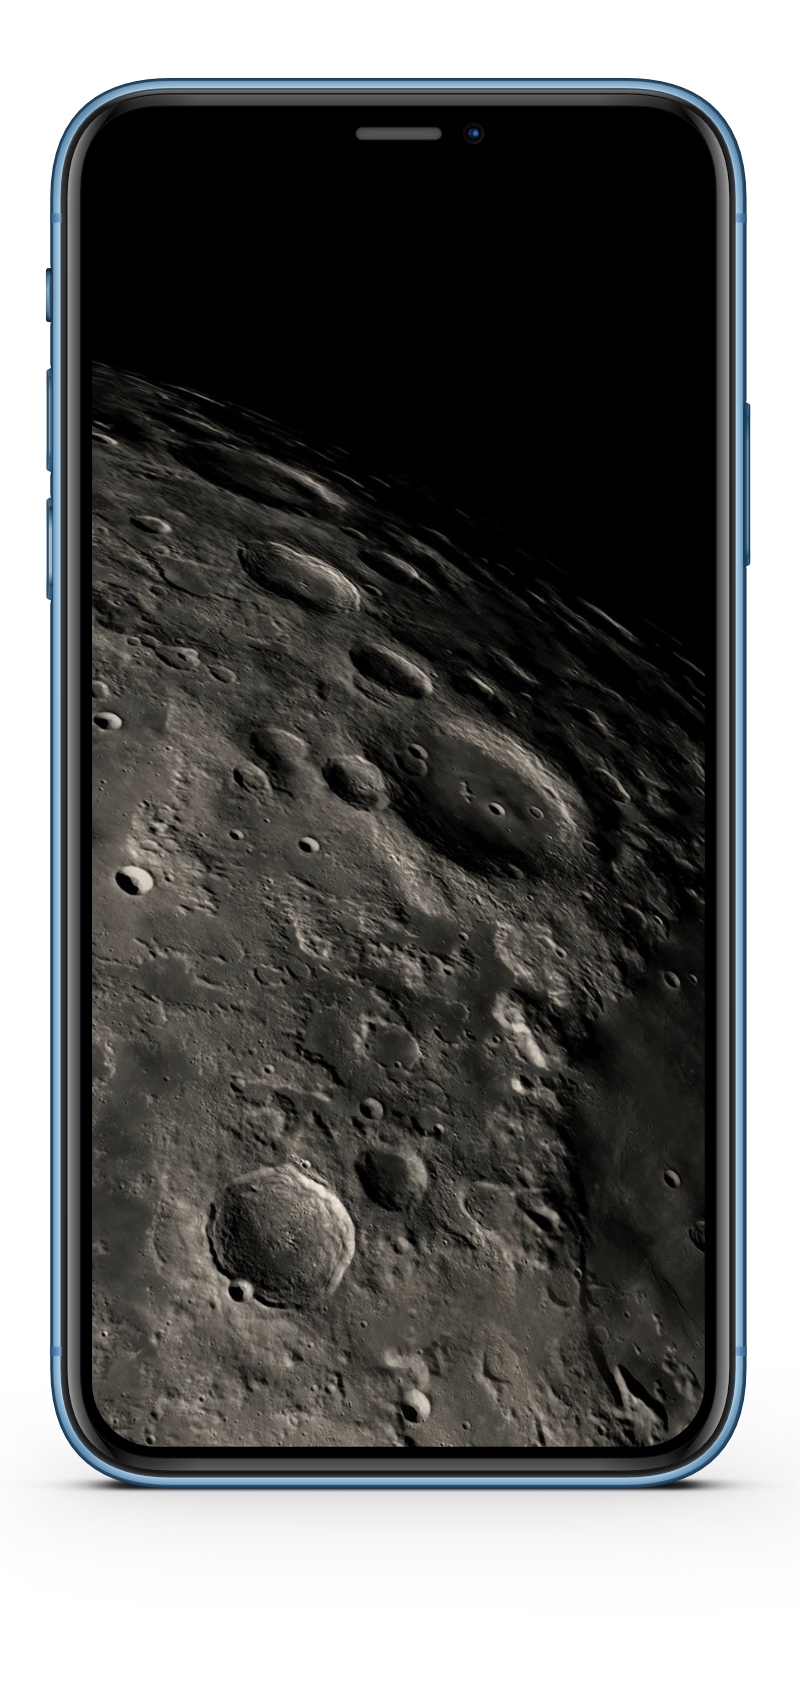 iPhone XR Wallpaper HD-Panorama